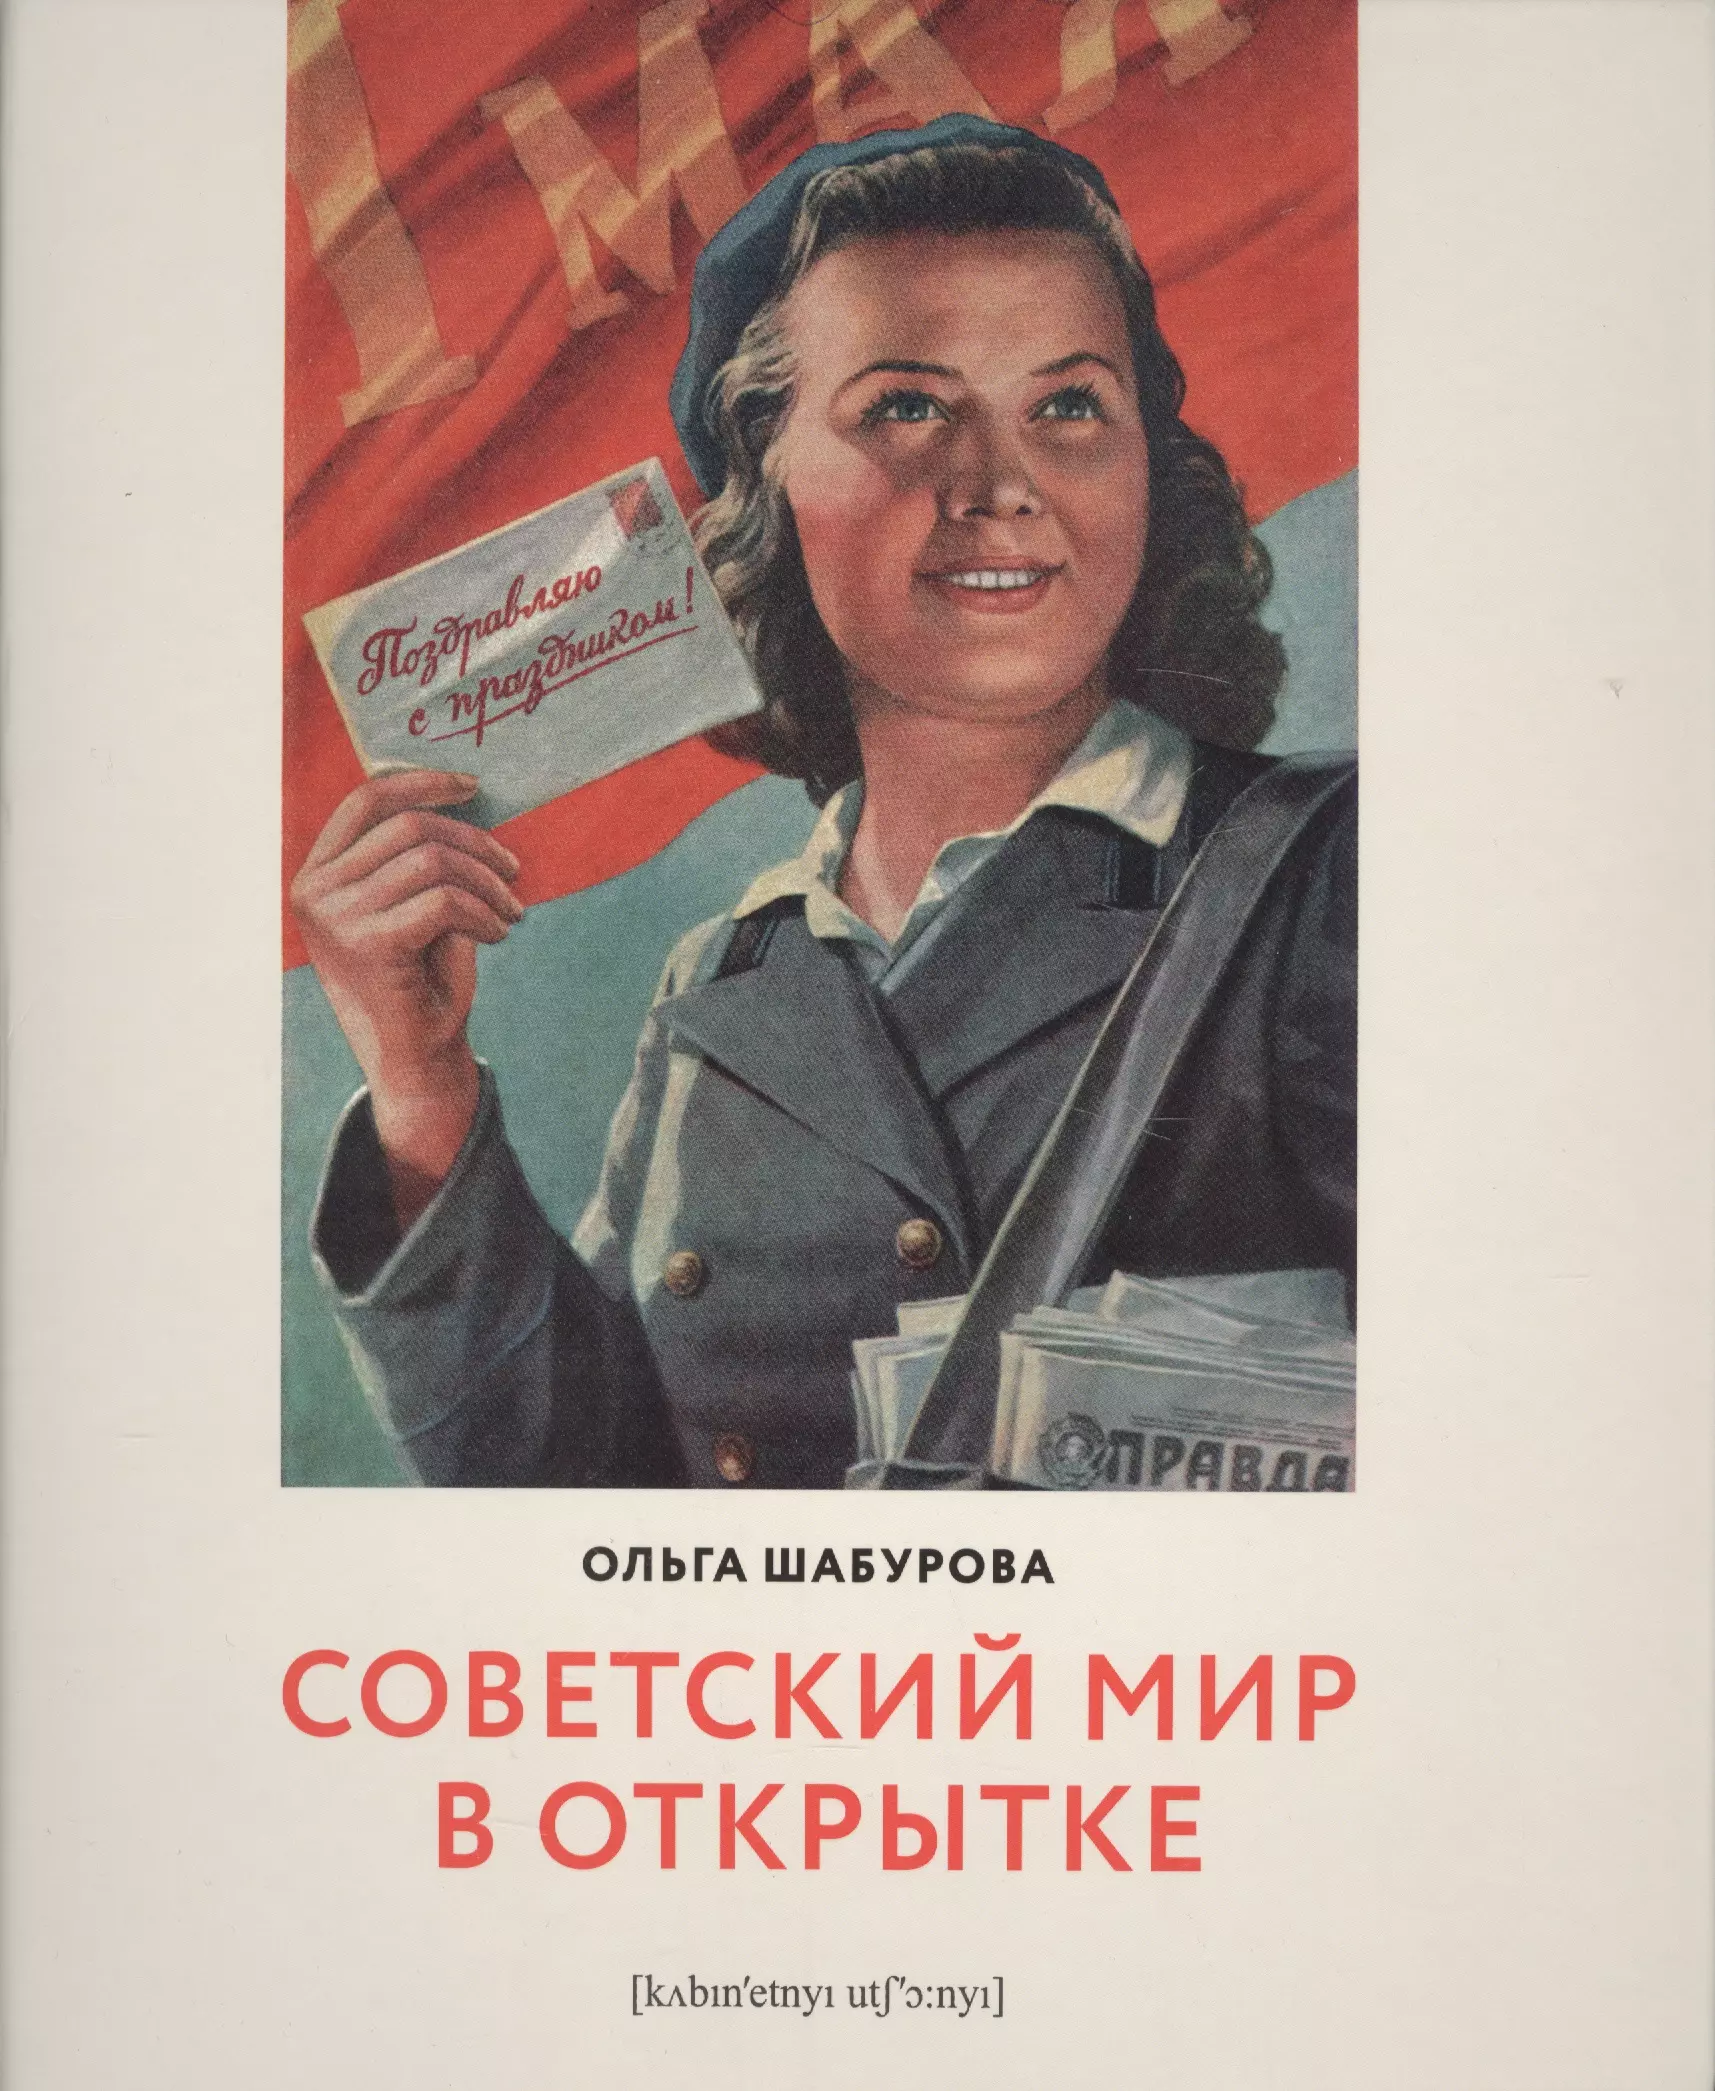 Шабурова Ольга Викторовна Советский мир в открытке